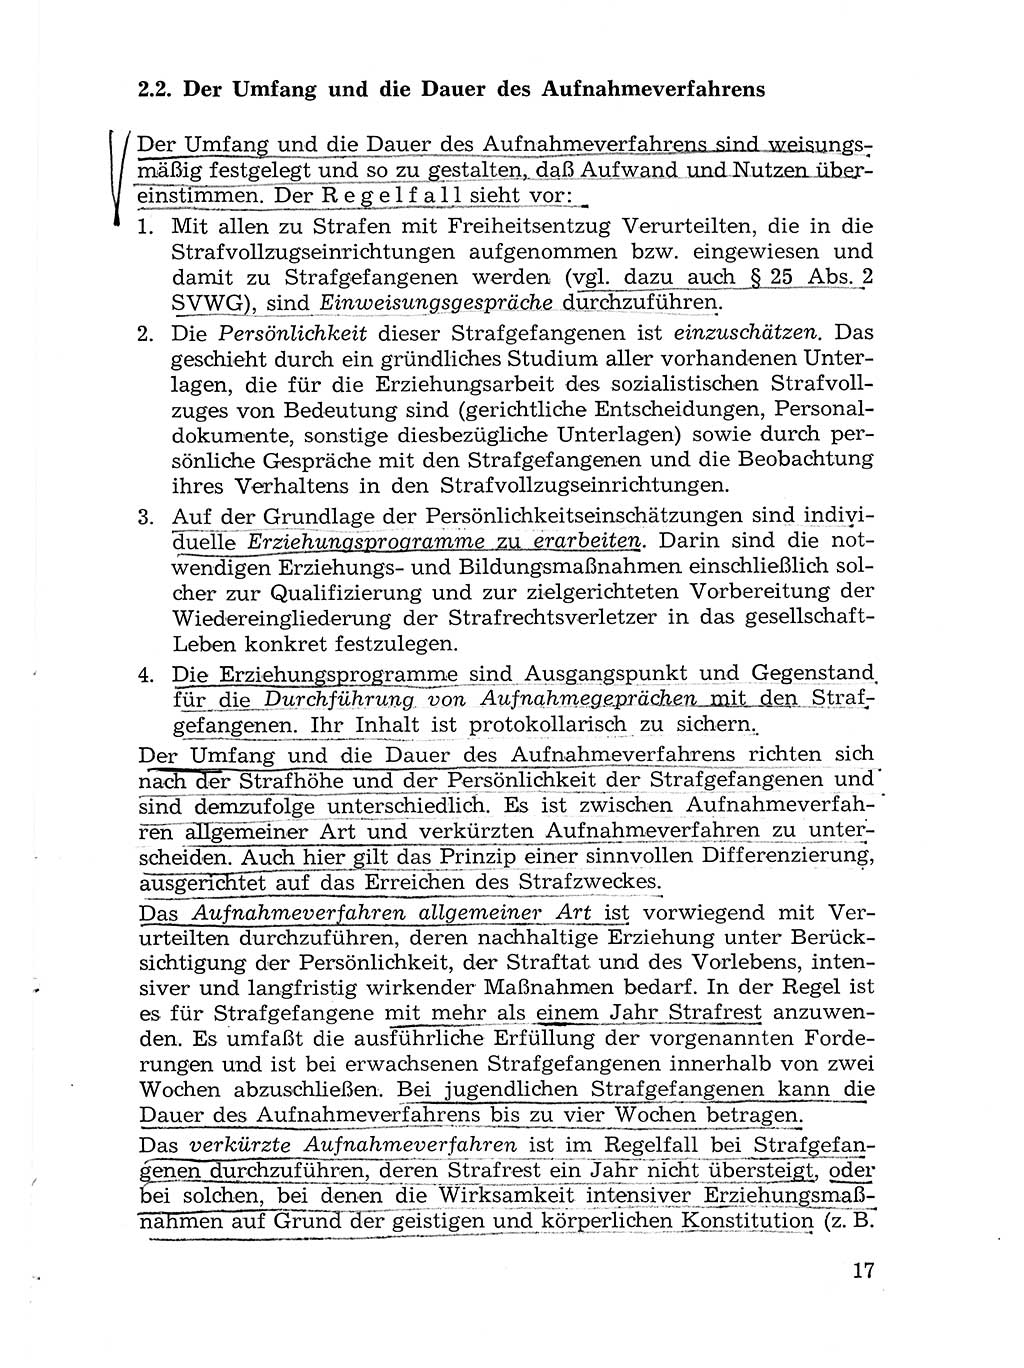 Sozialistischer Strafvollzug (SV) [Deutsche Demokratische Republik (DDR)] 1972, Seite 17 (Soz. SV DDR 1972, S. 17)